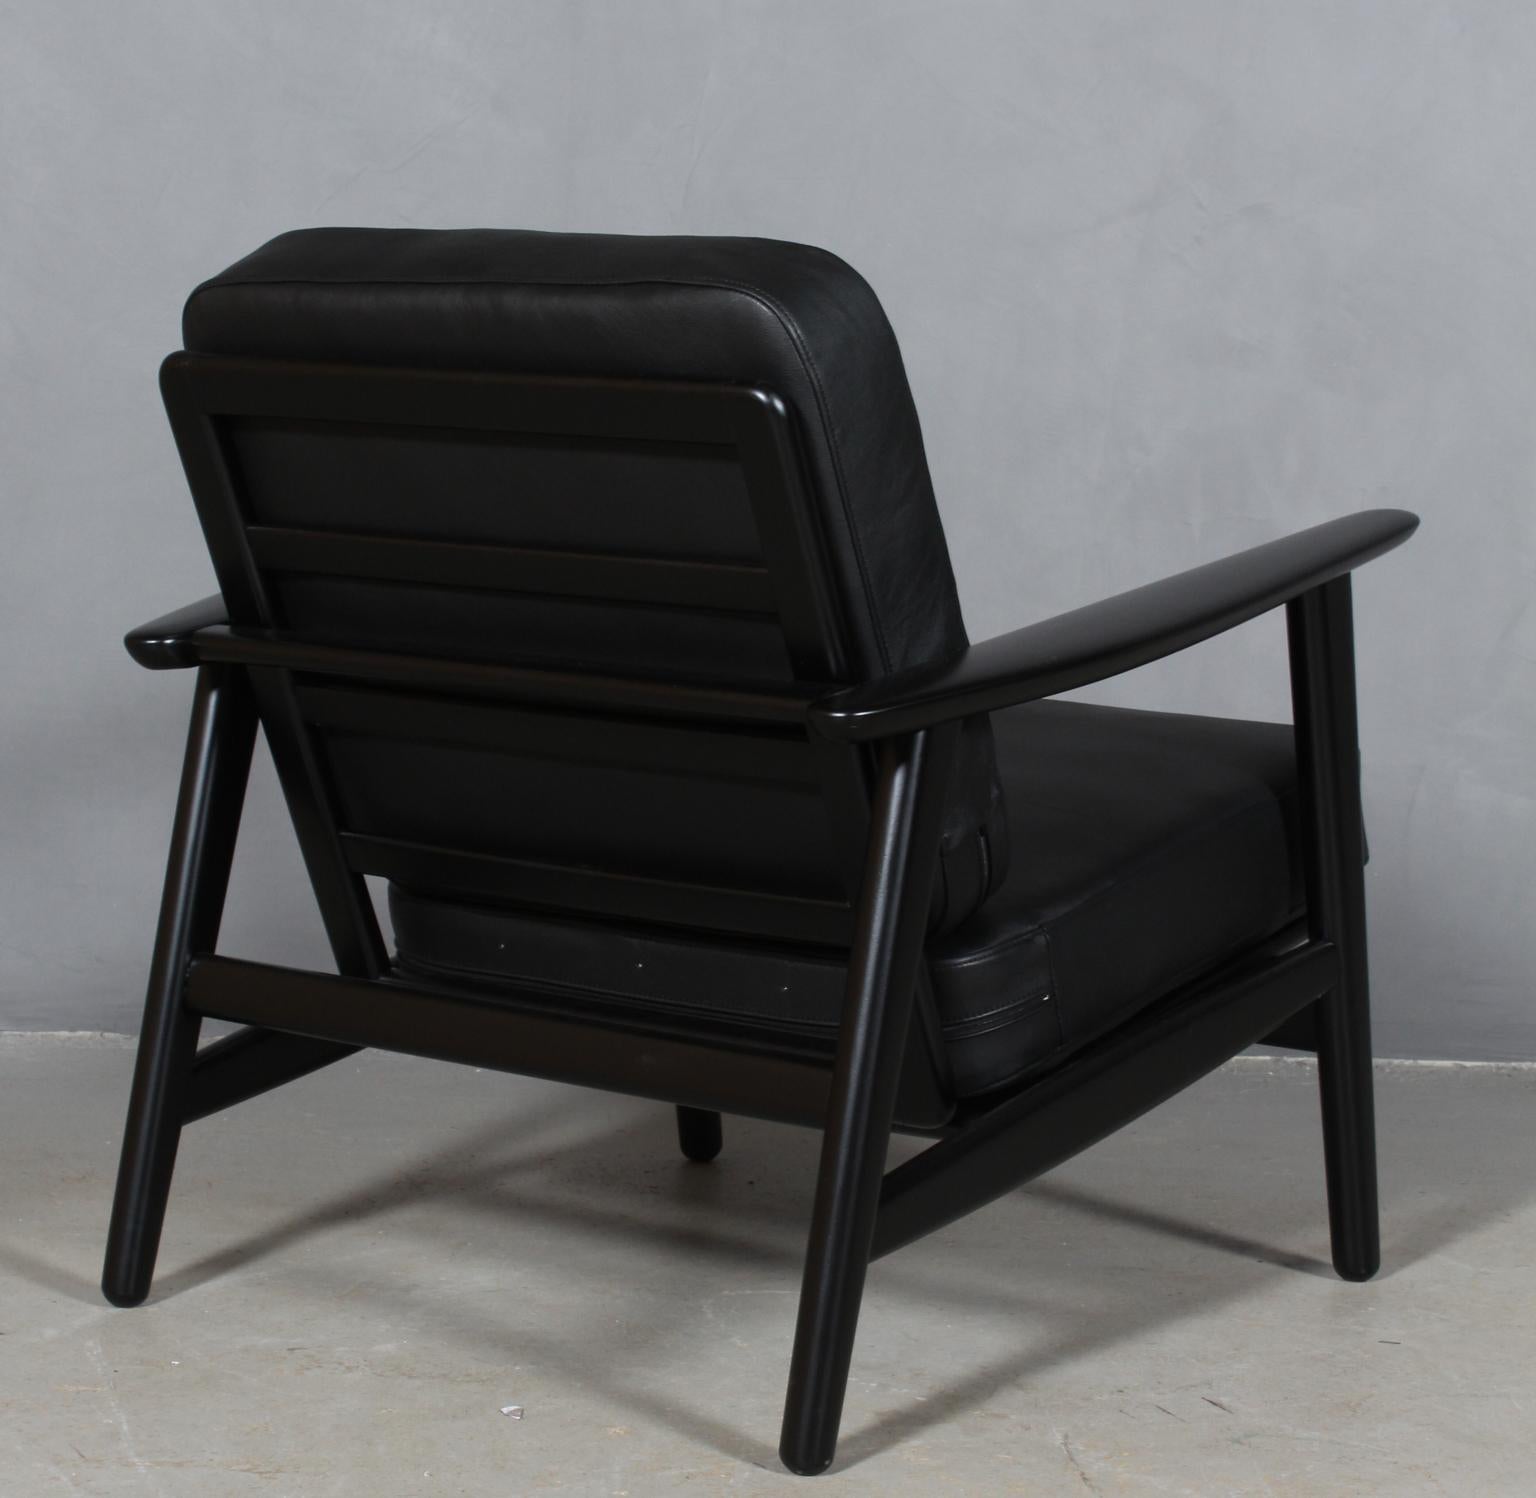 Danish Hans J. Wegner Lounge Chair, Model 233